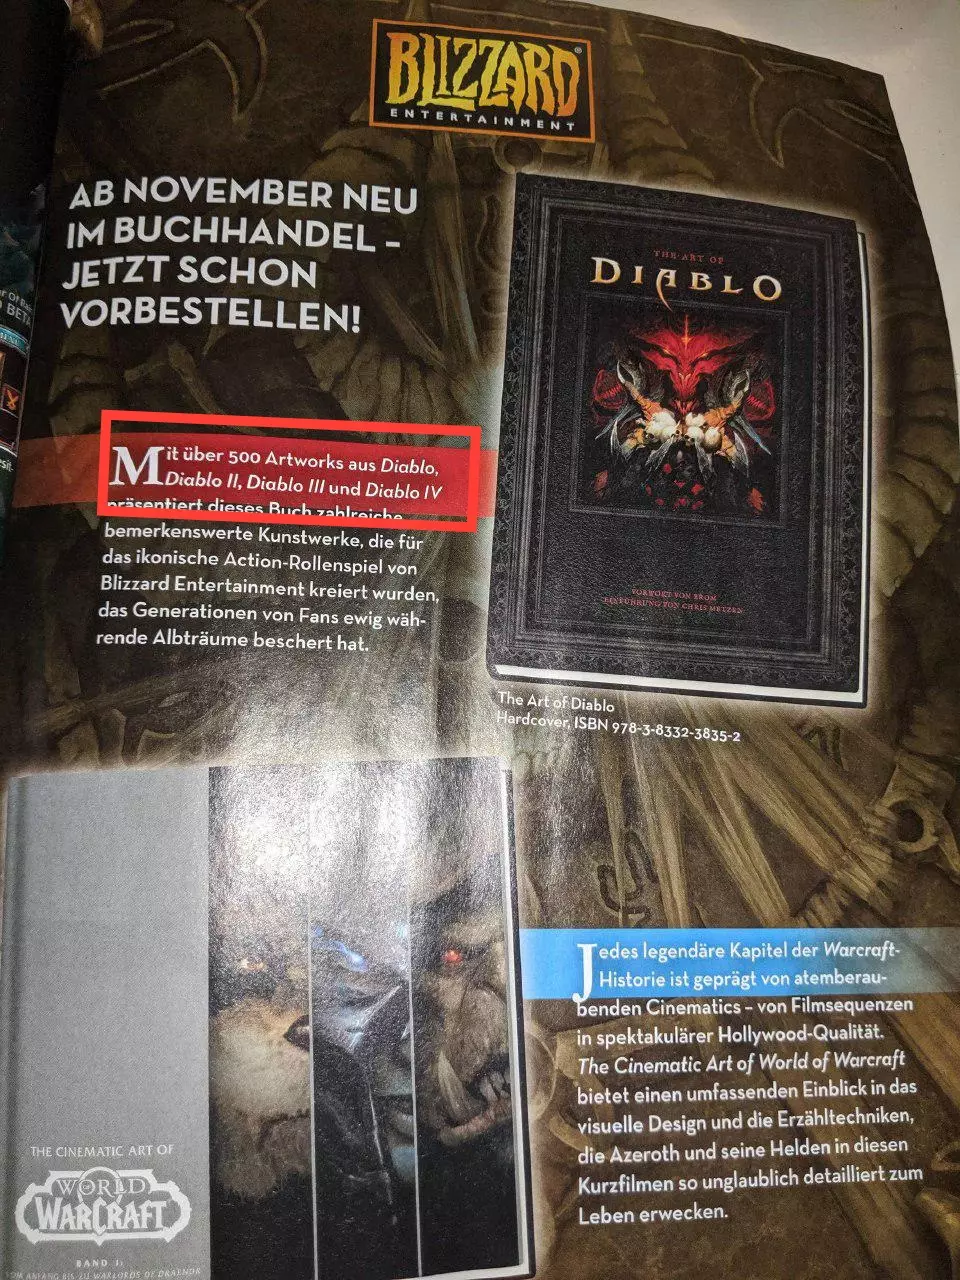 Знімок з артбуку зі згадуванням Diablo 4